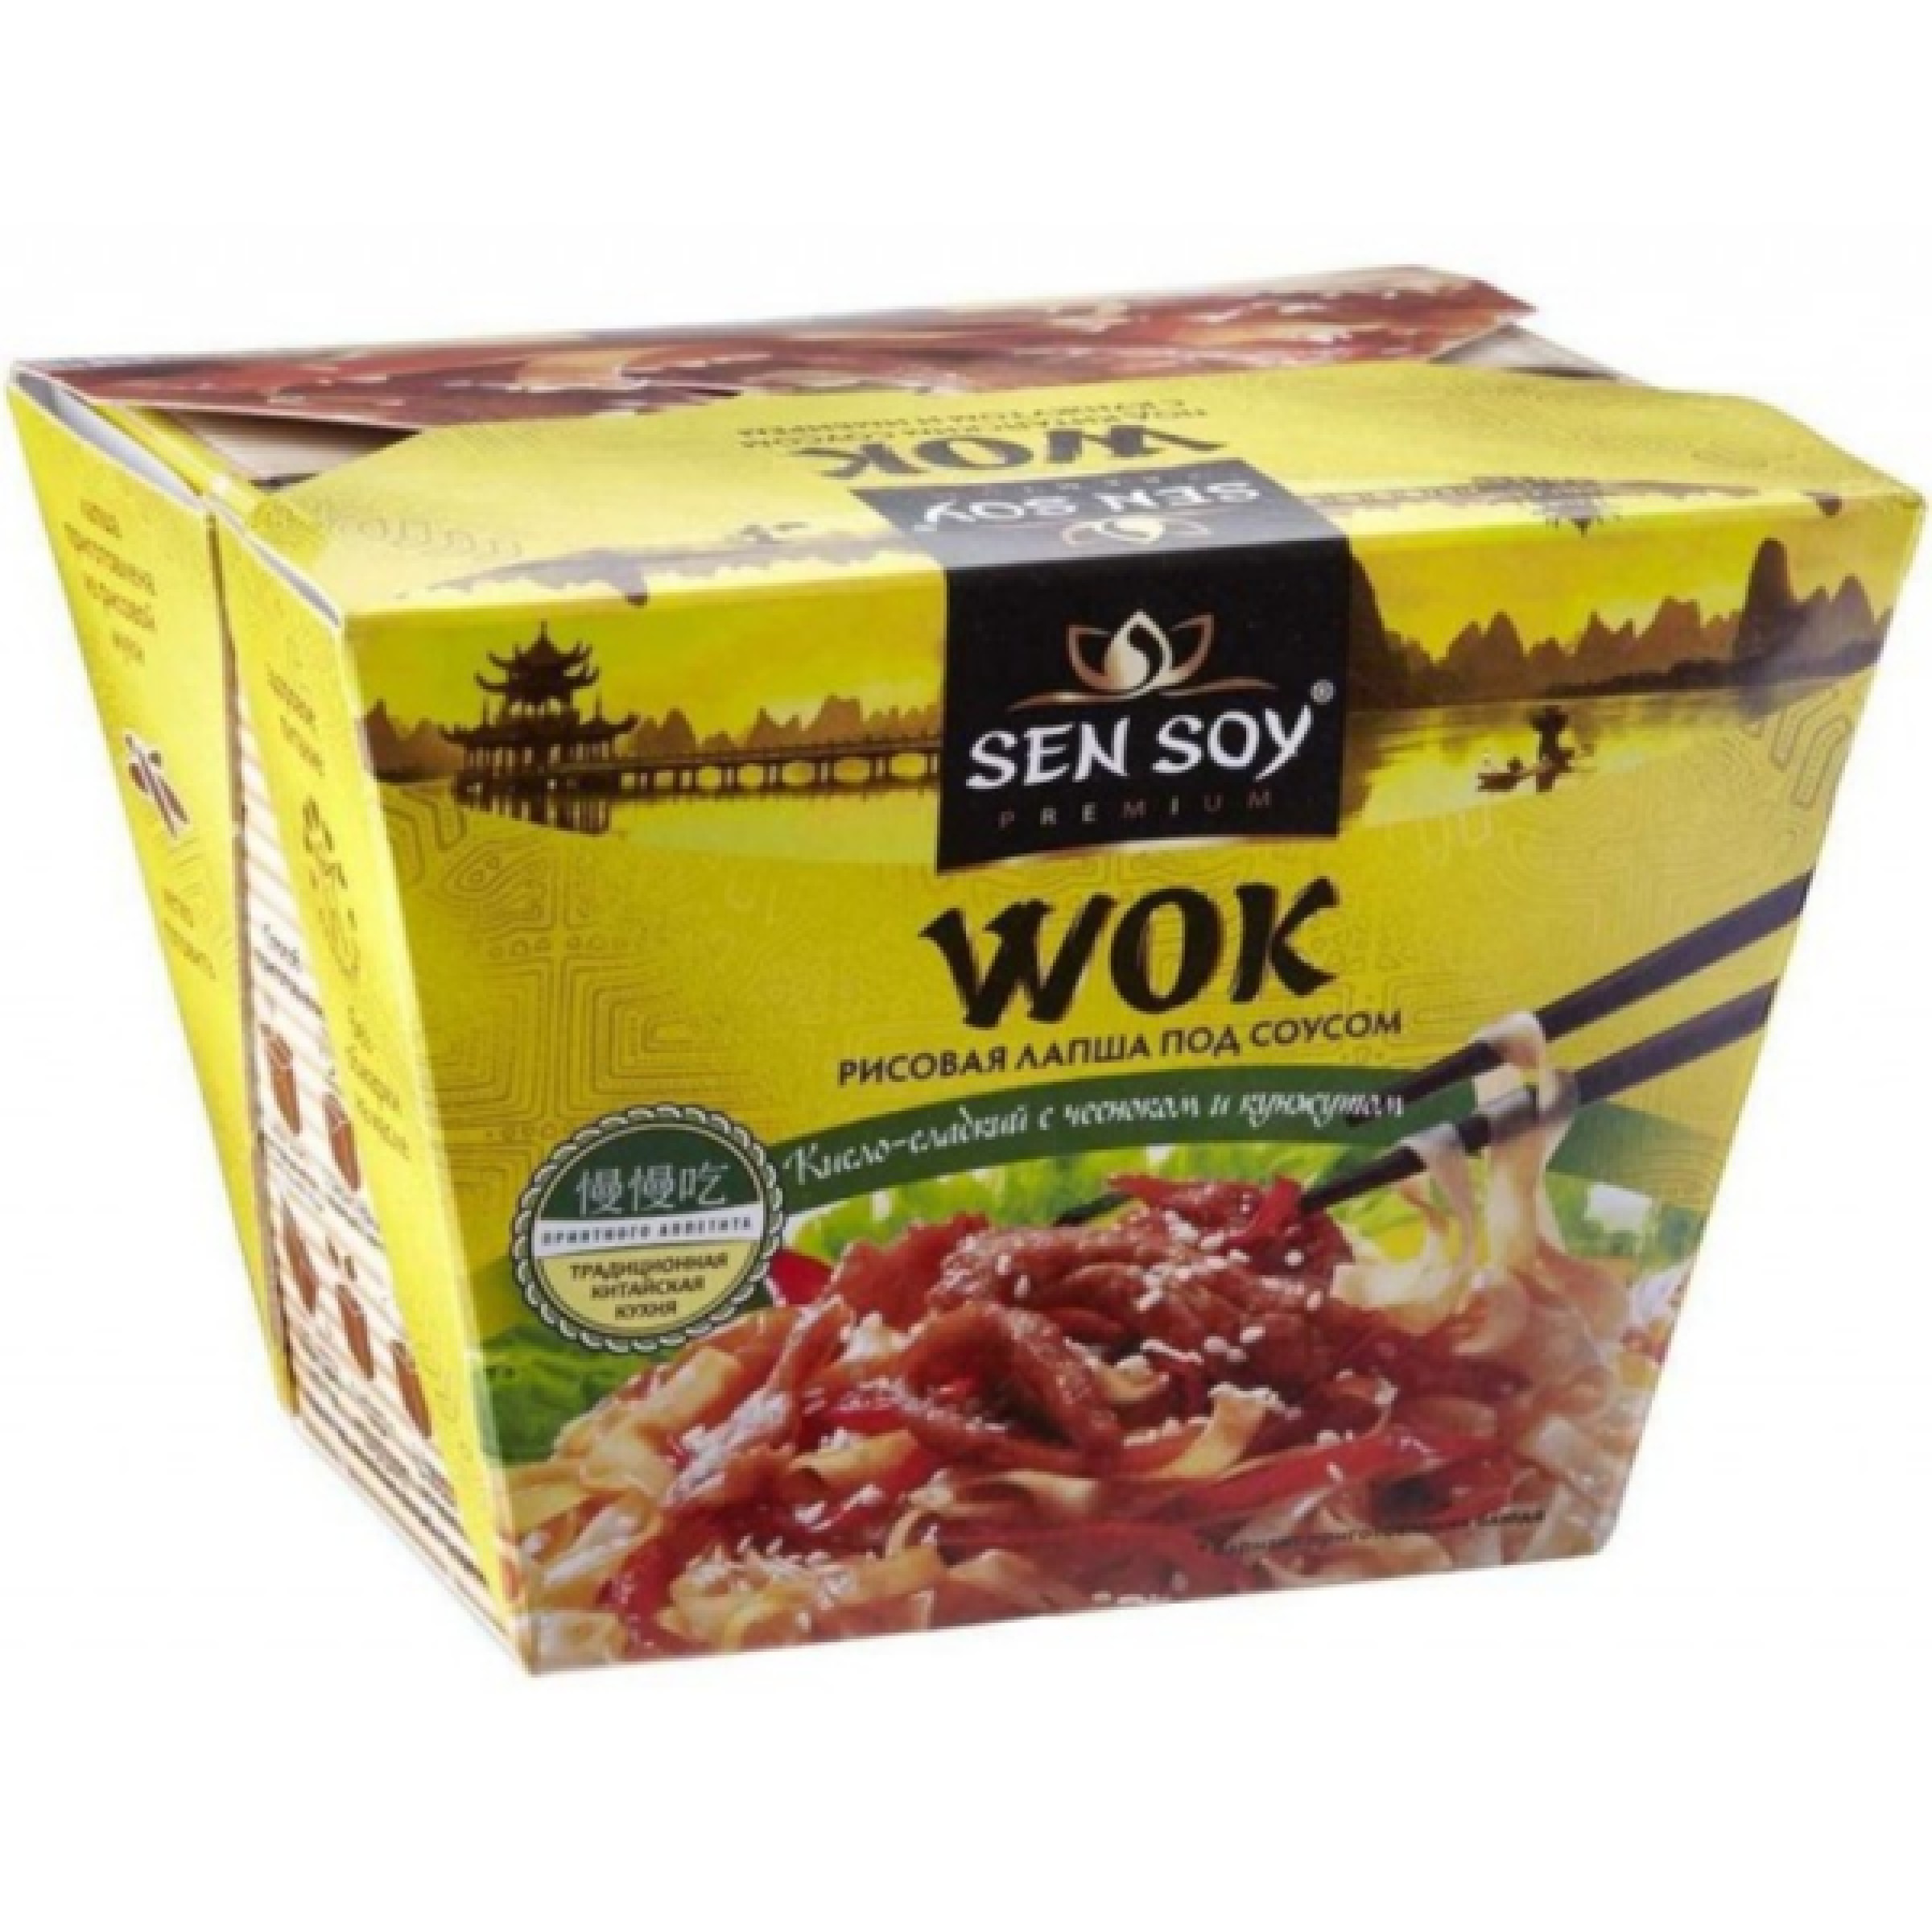 Рисовая лапша под Китайским соусом WOK Сэн Сой Премиум, 125 гр